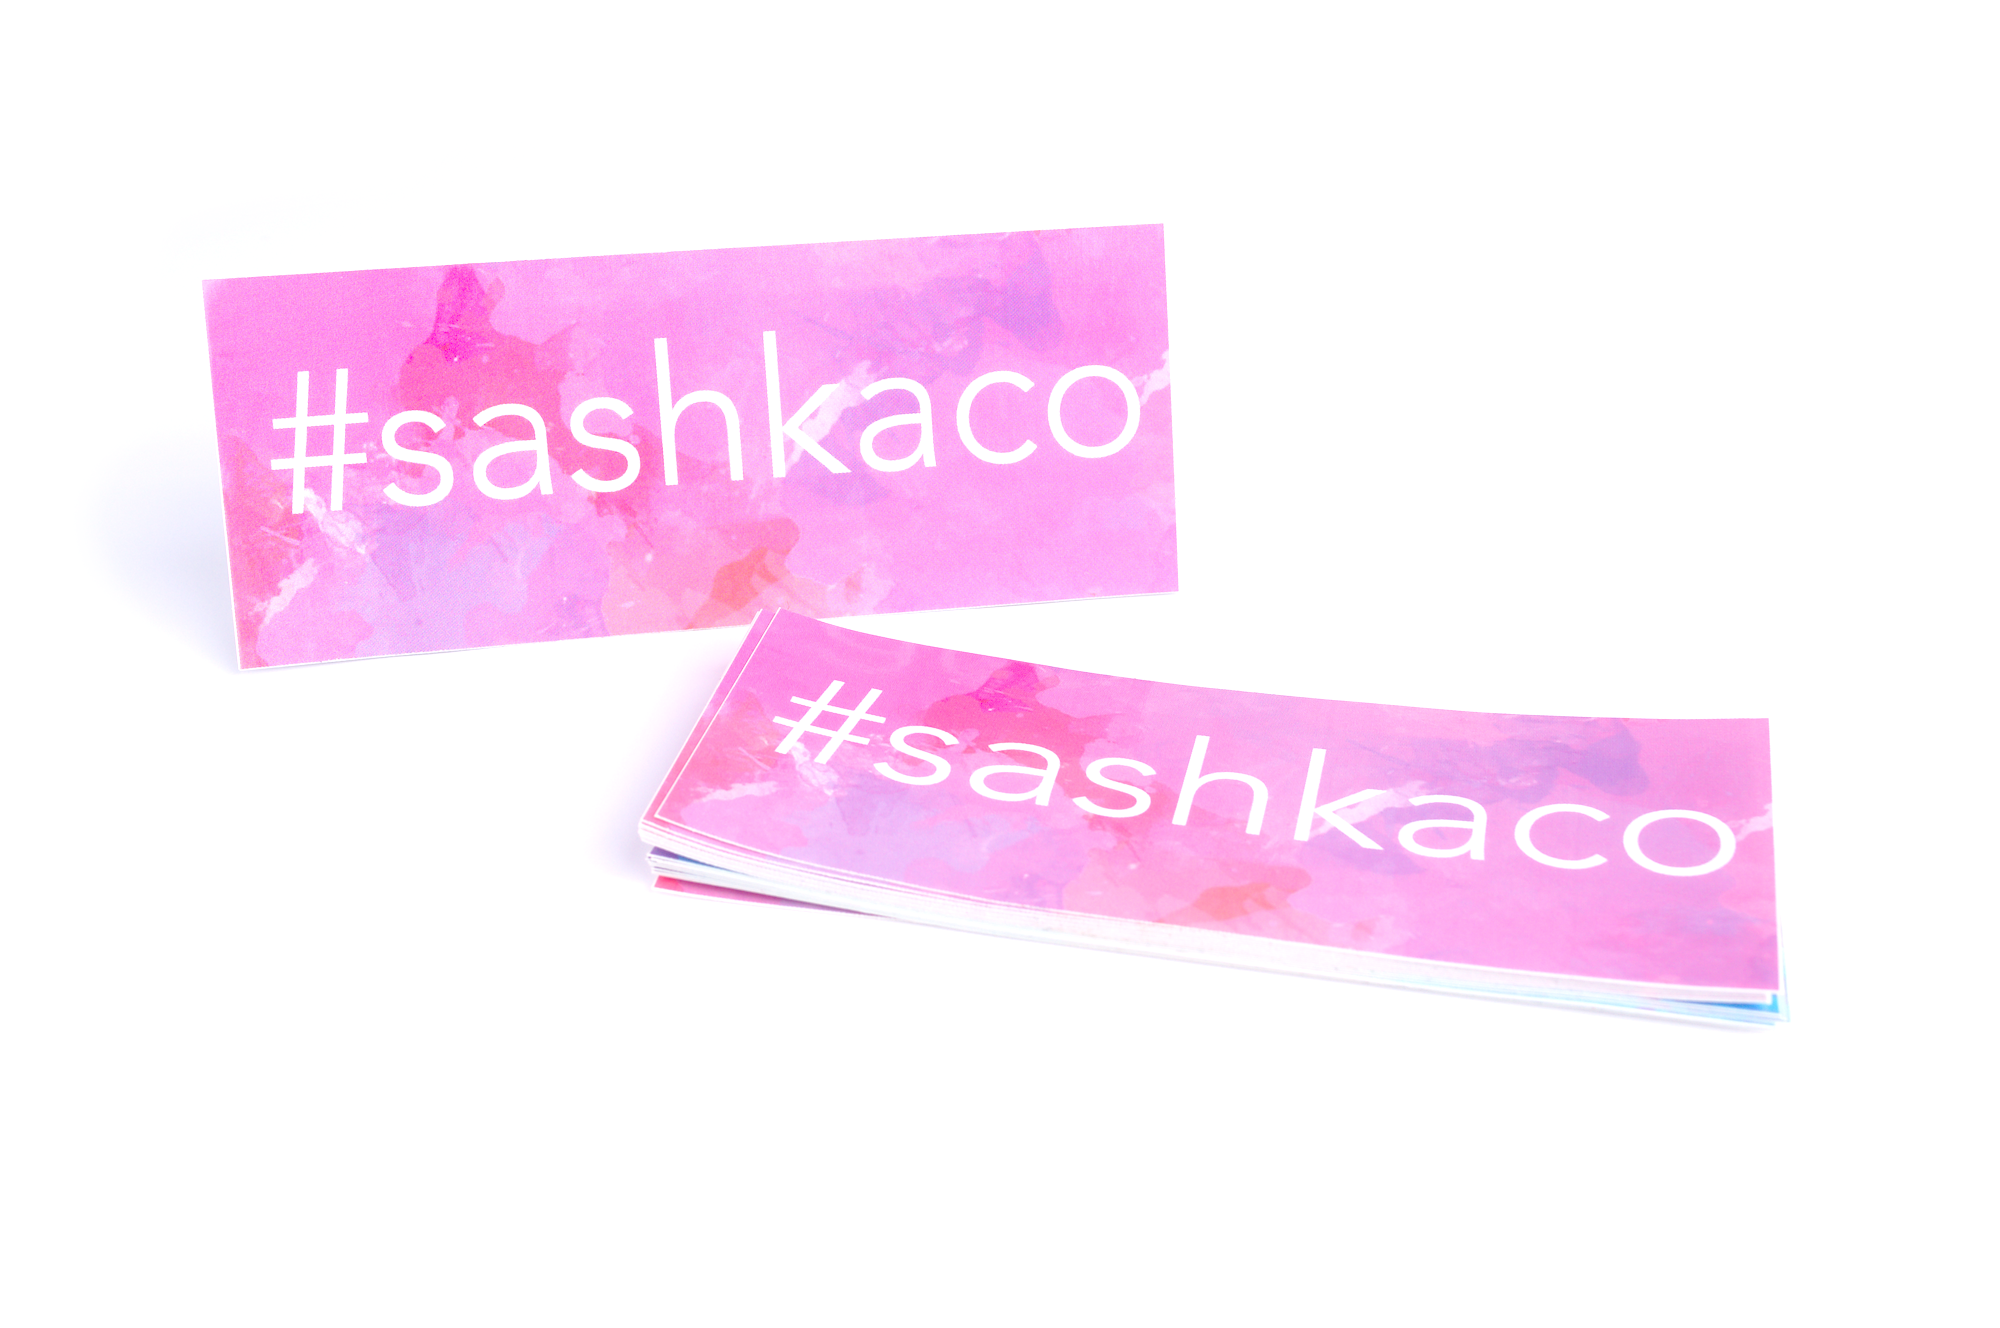 Sashka Co. Extended 8" Bracelet Pink / Blue / White / Clear Carousel Bracelet - Extended 8"